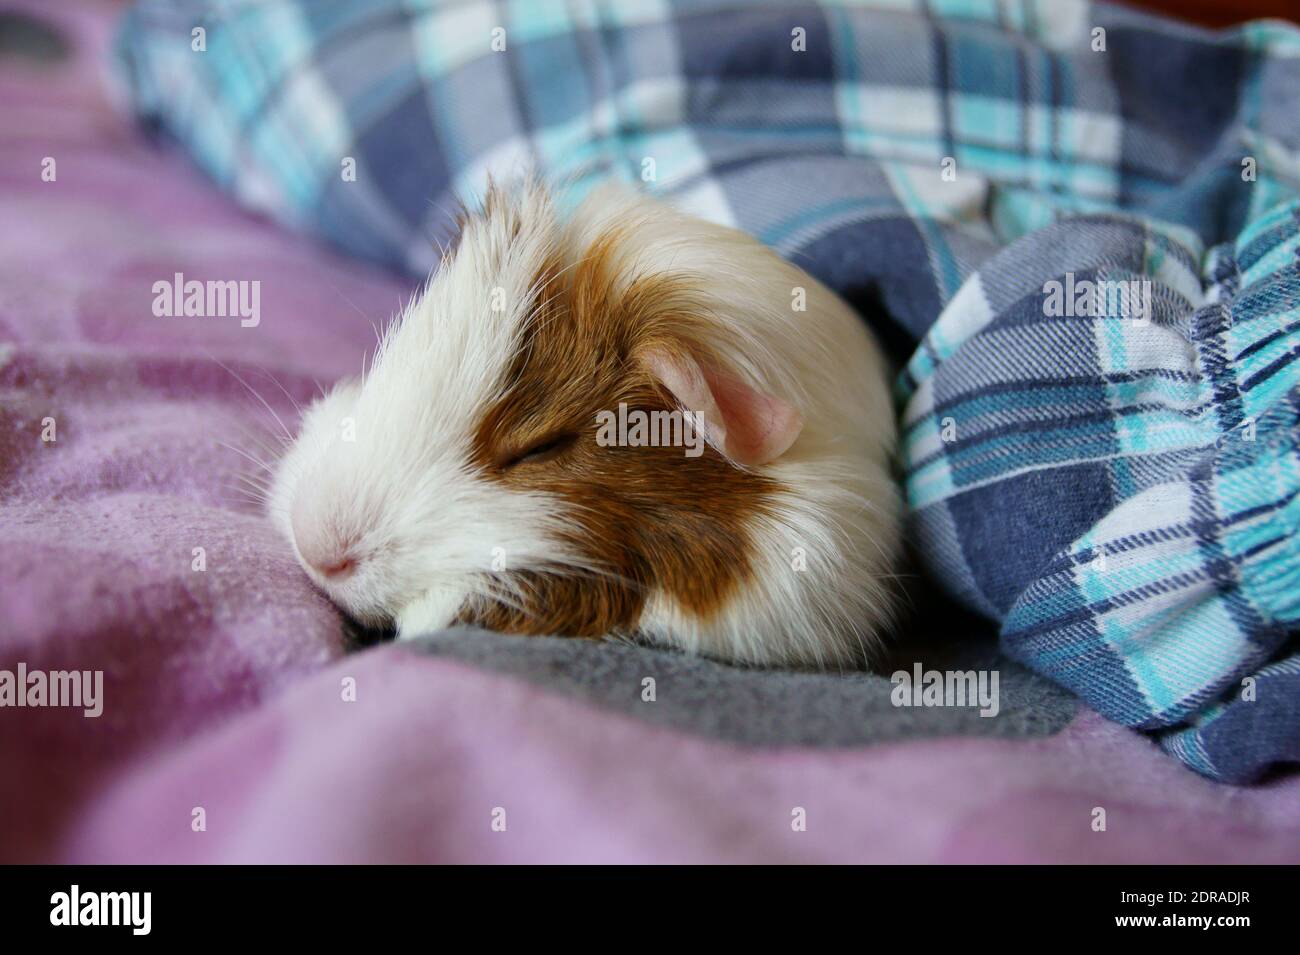 Nahaufnahme des Meerschweinchen, das auf dem Bett schläft Stockfotografie -  Alamy